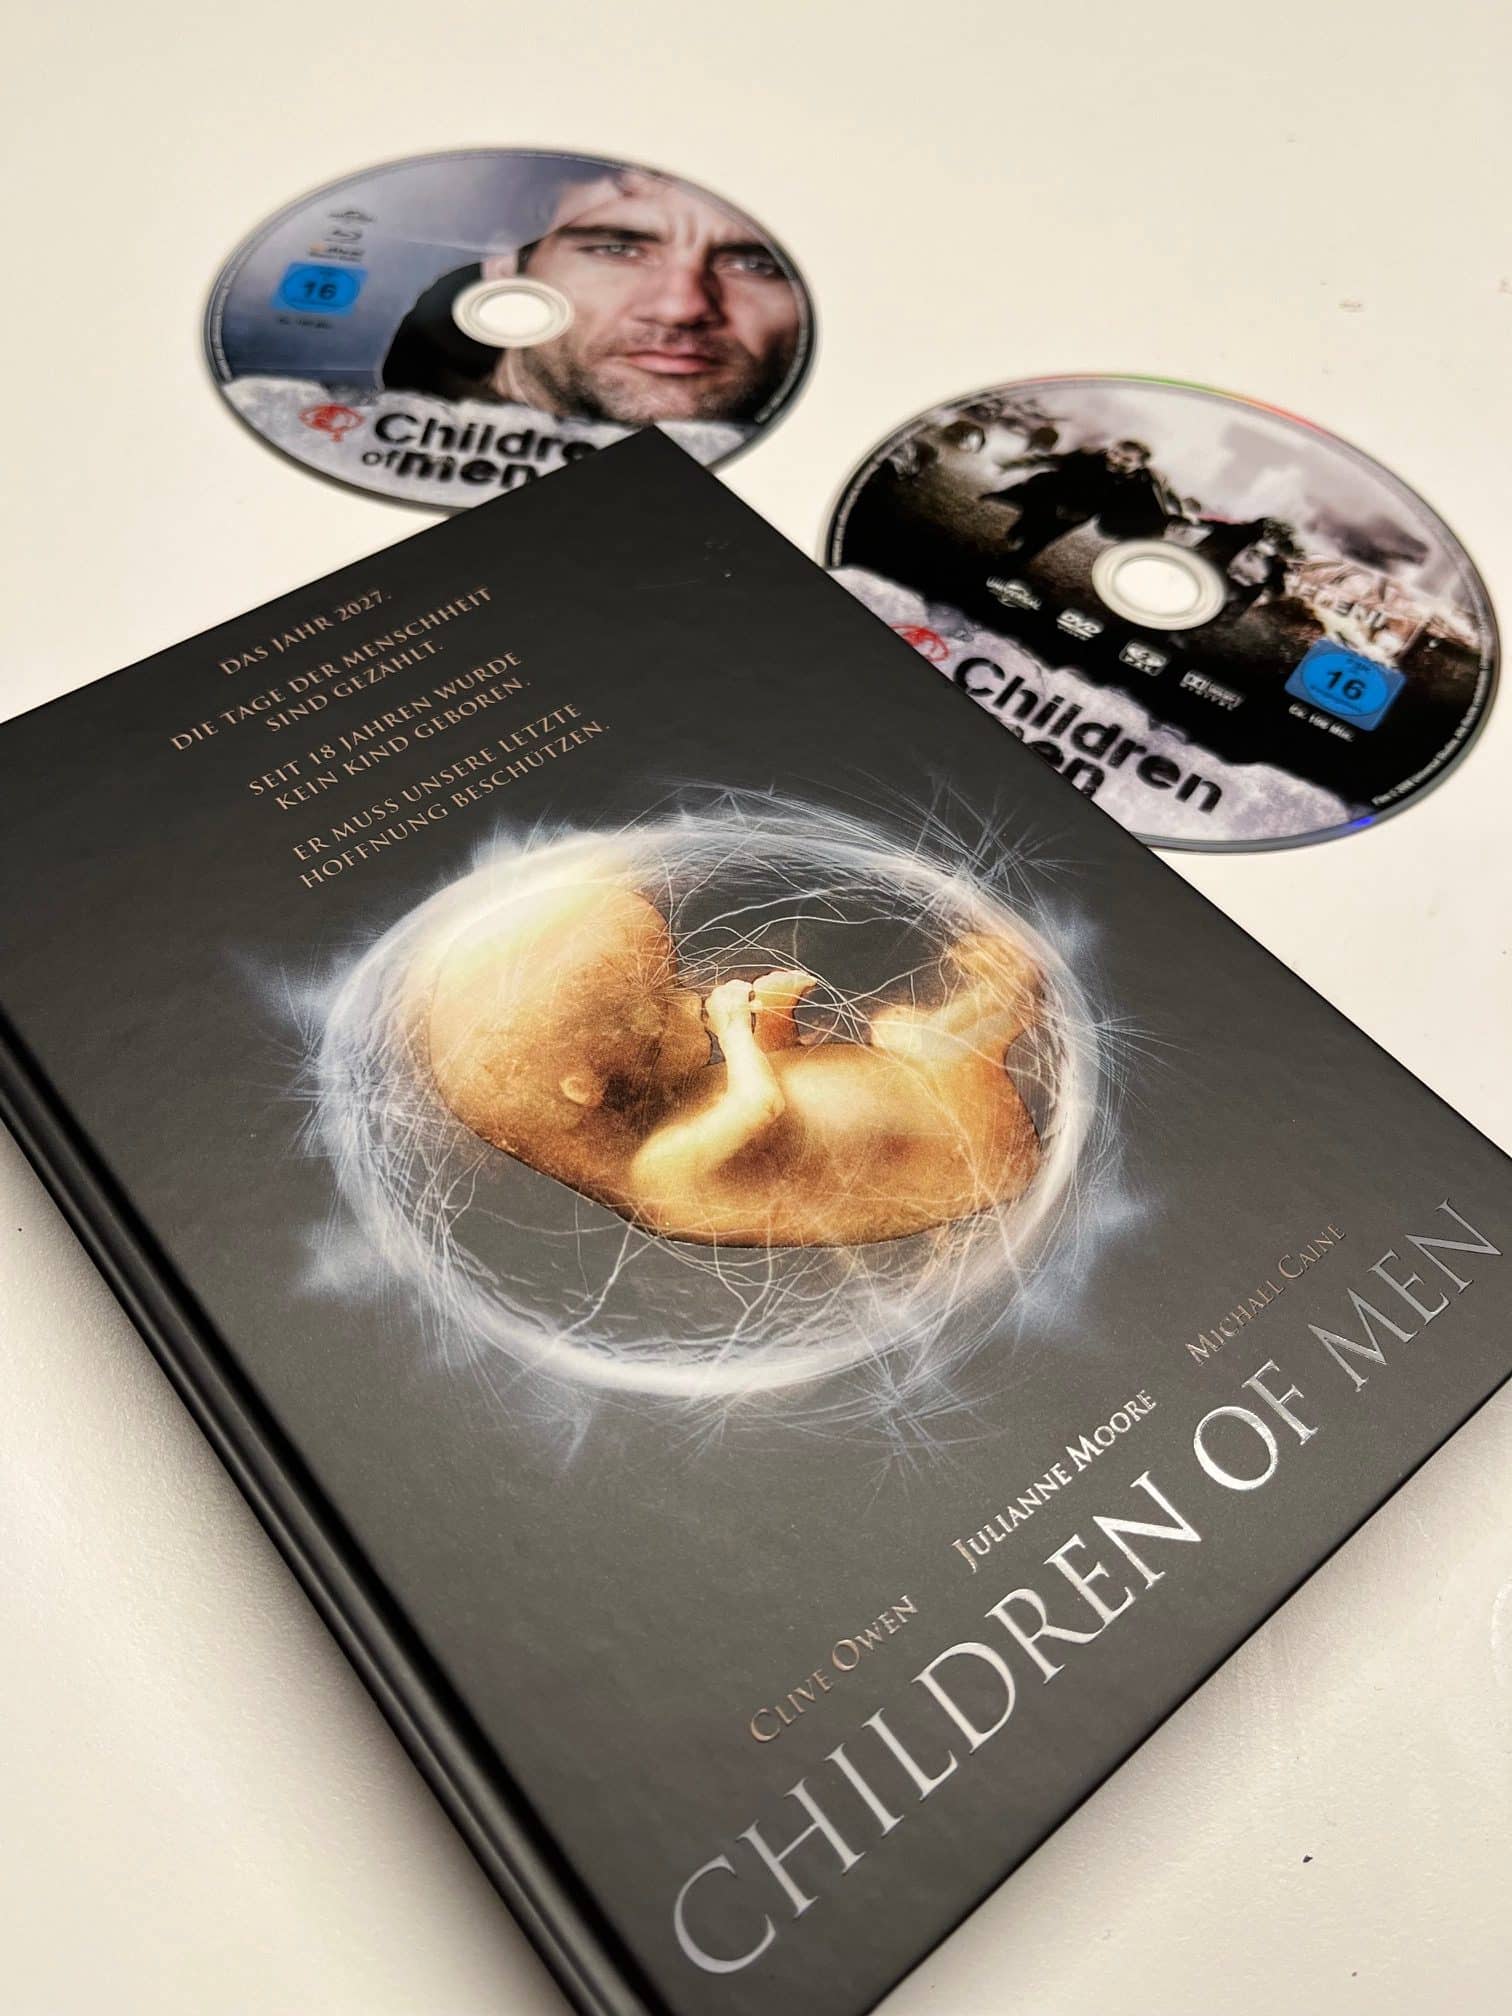 [Review] Children of Men (2006) von Alfonso Cuarón (im Blu-ray- und DVD-Mediabook)